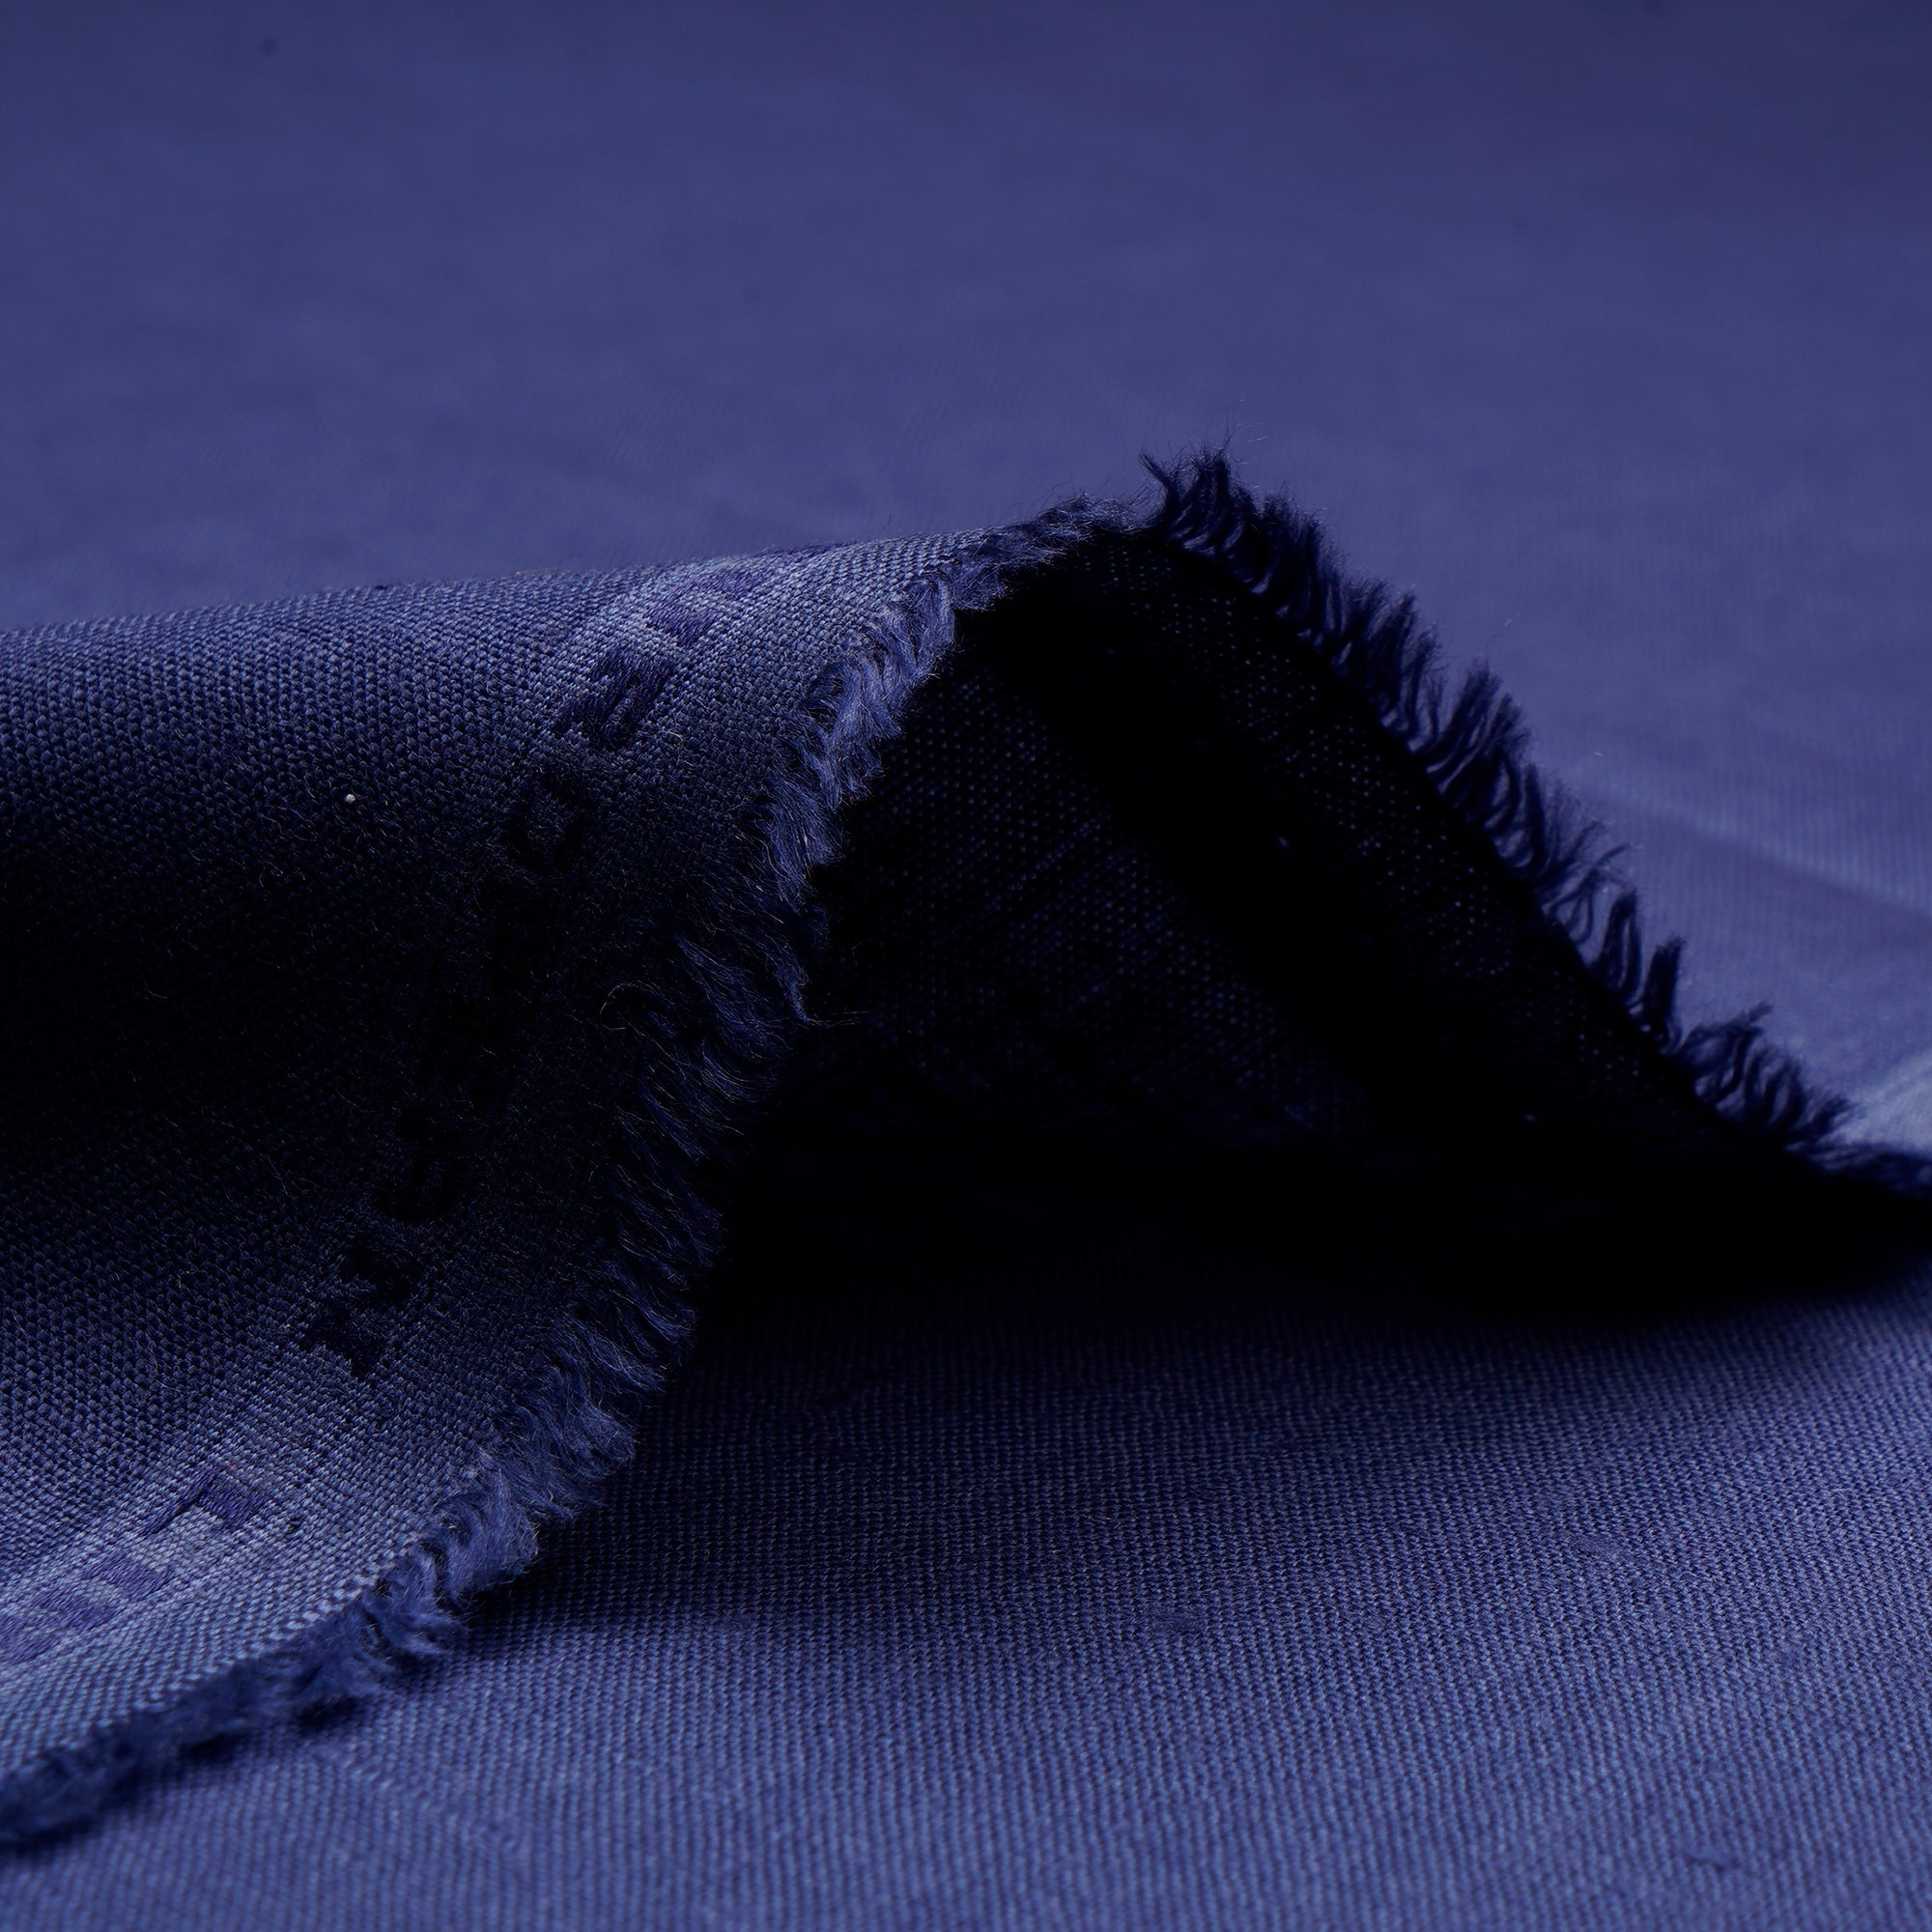 Persian Blue Premium Linen Unstitched Men's Shirt Piece (58 Inches | 1.60 Meters)